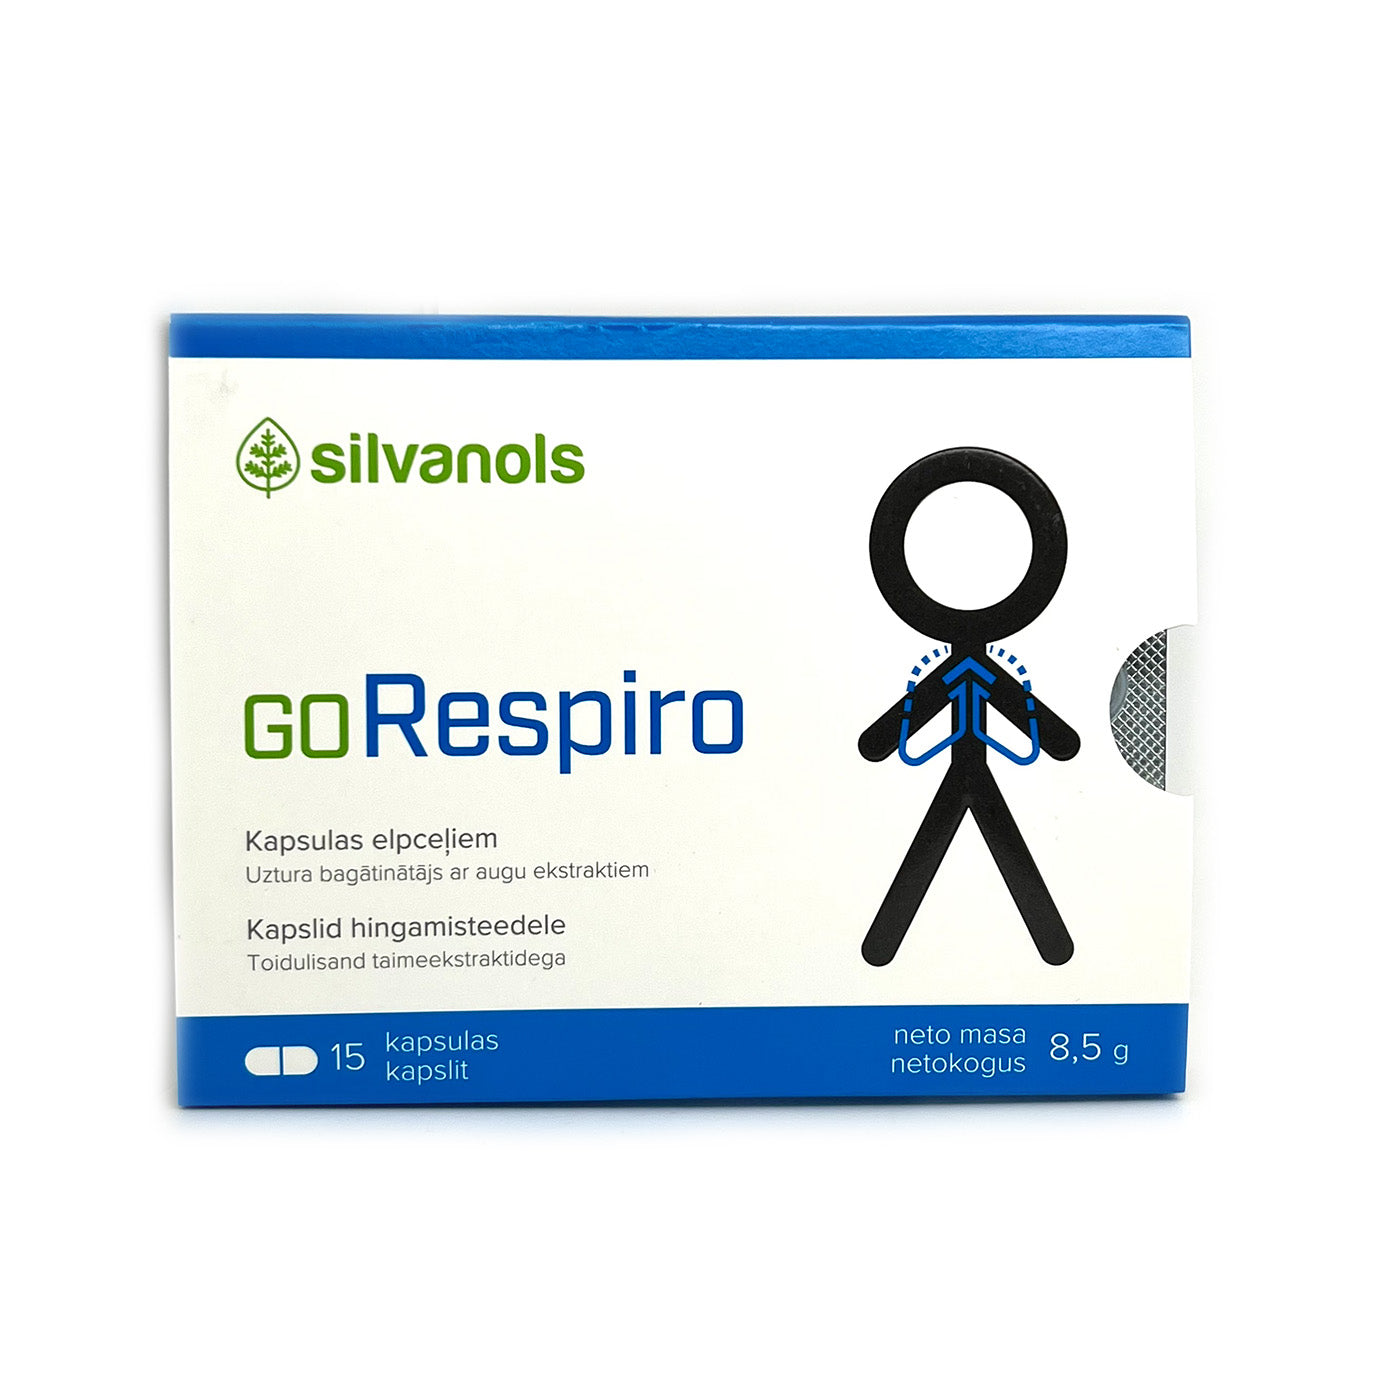 Silvanols GoRespiro, 15 capsules